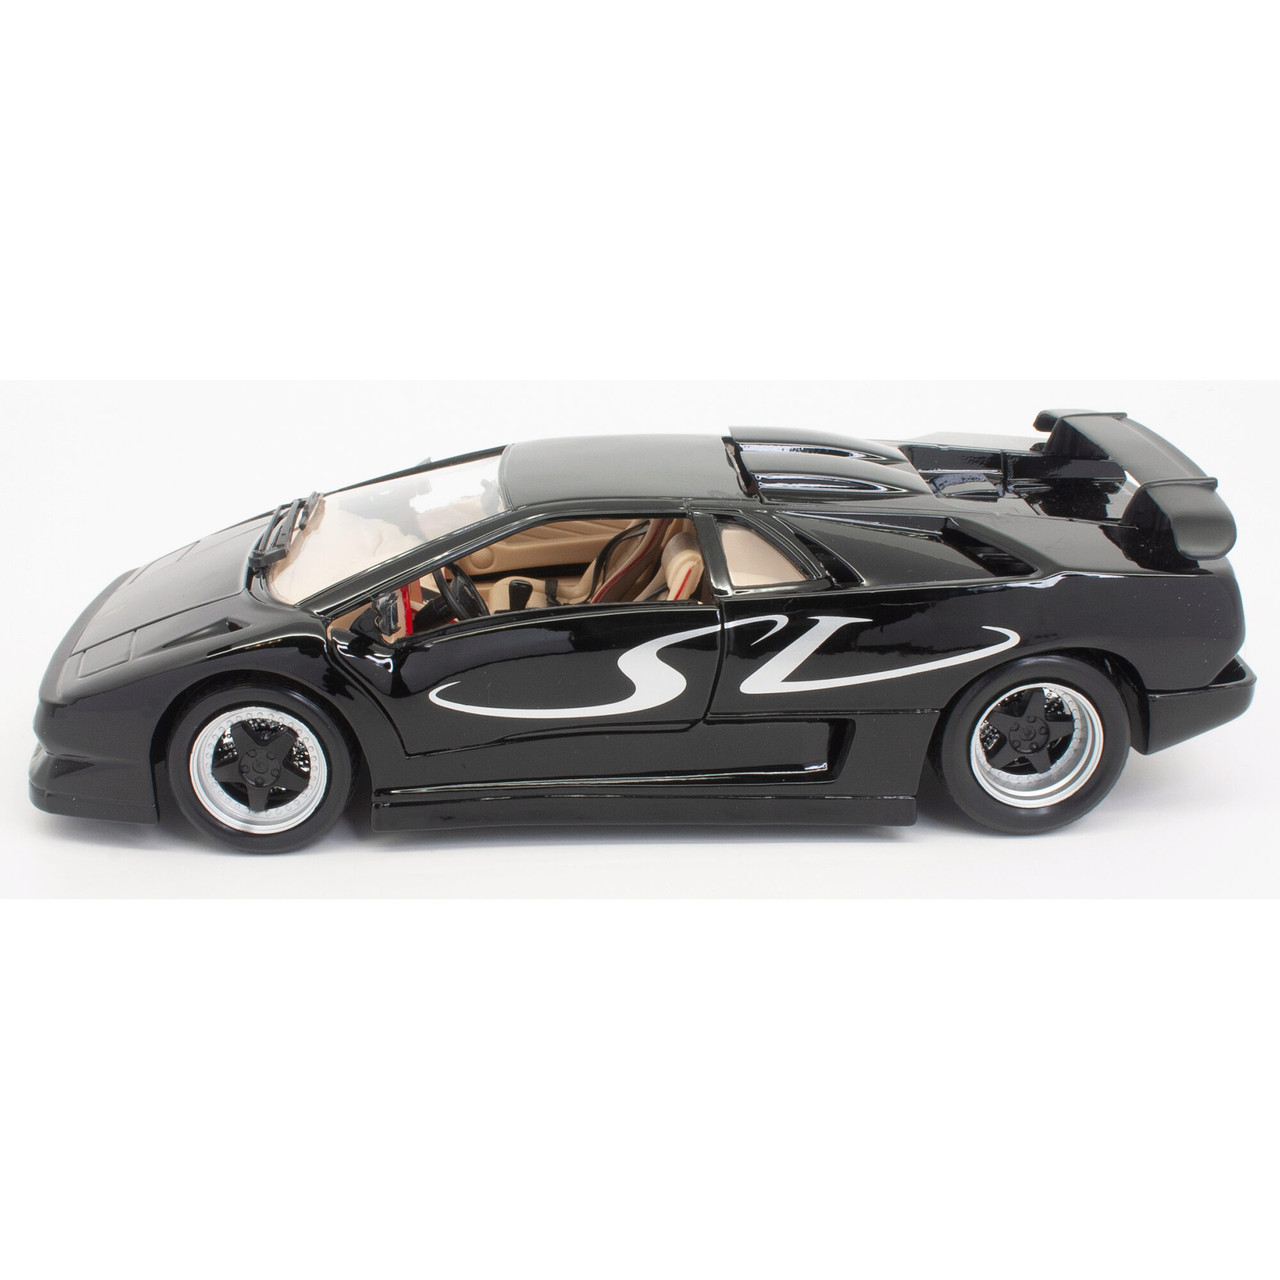 Lamborghini Diablo SV 1:18 Scale Diecast Model Car by Maisto